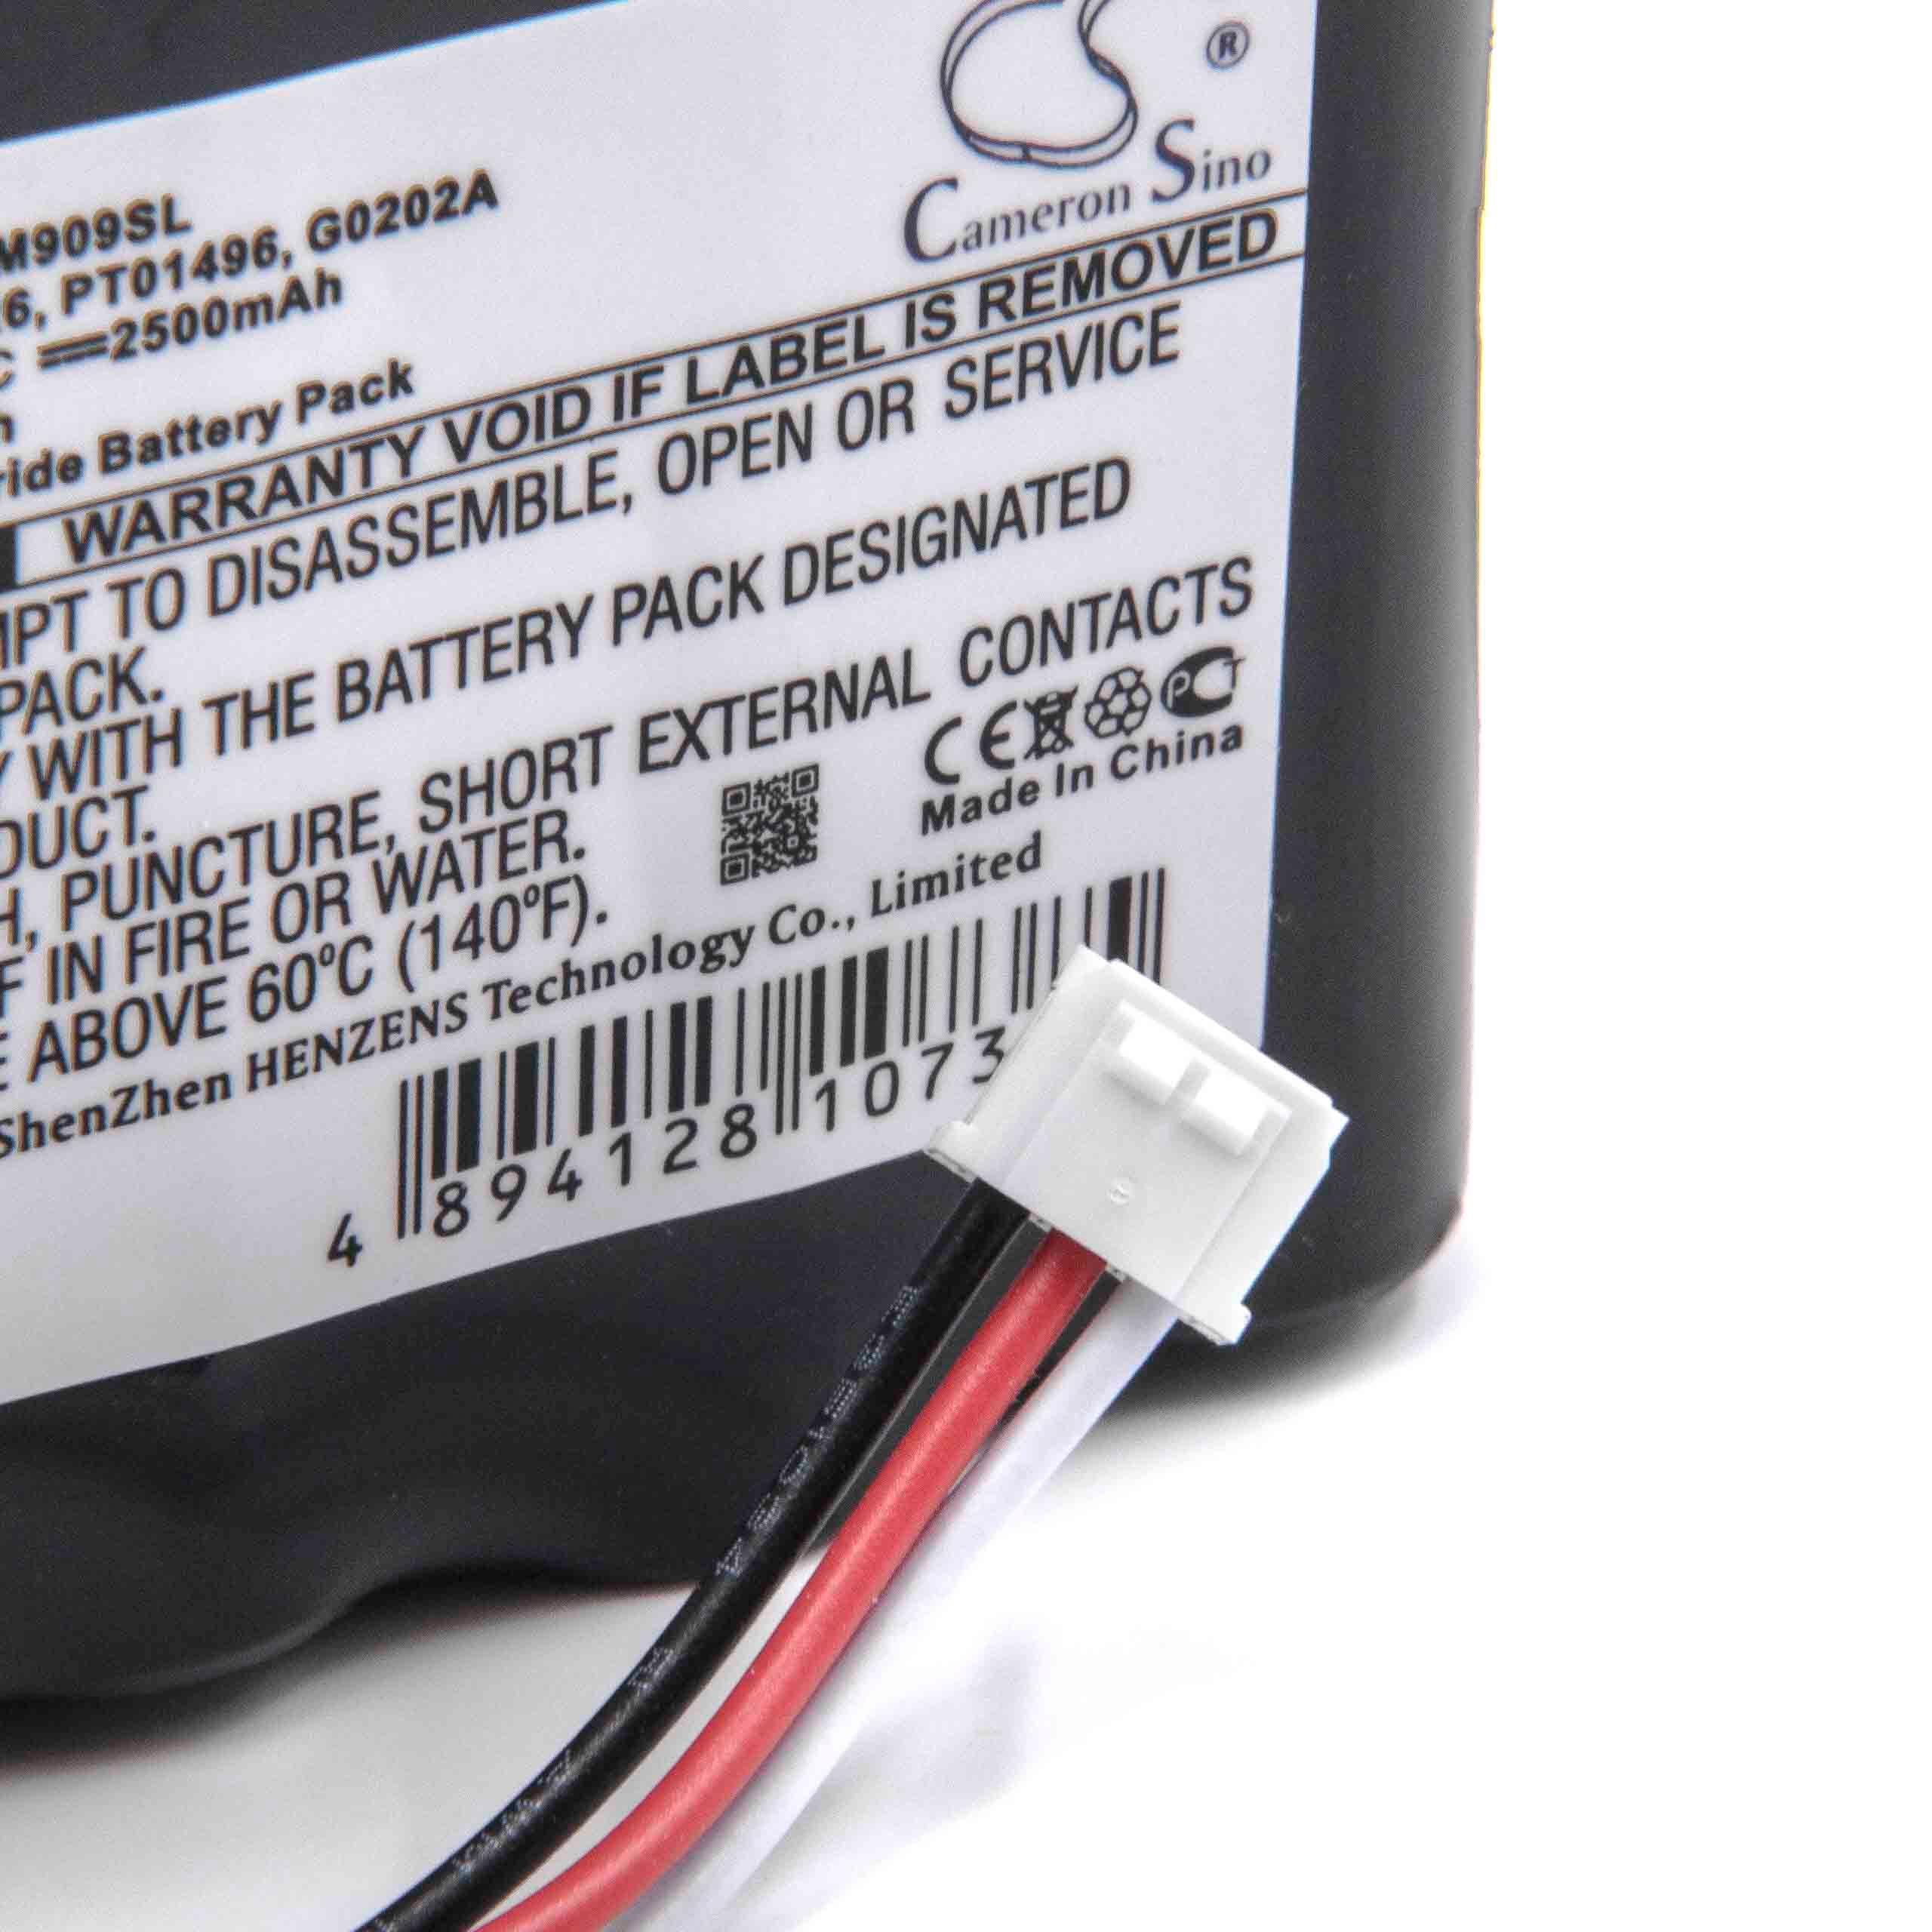 Batterie remplace Anritsu G0202A, PT01426, PT01496 pour outil de mesure - 2500mAh 4,8V NiMH